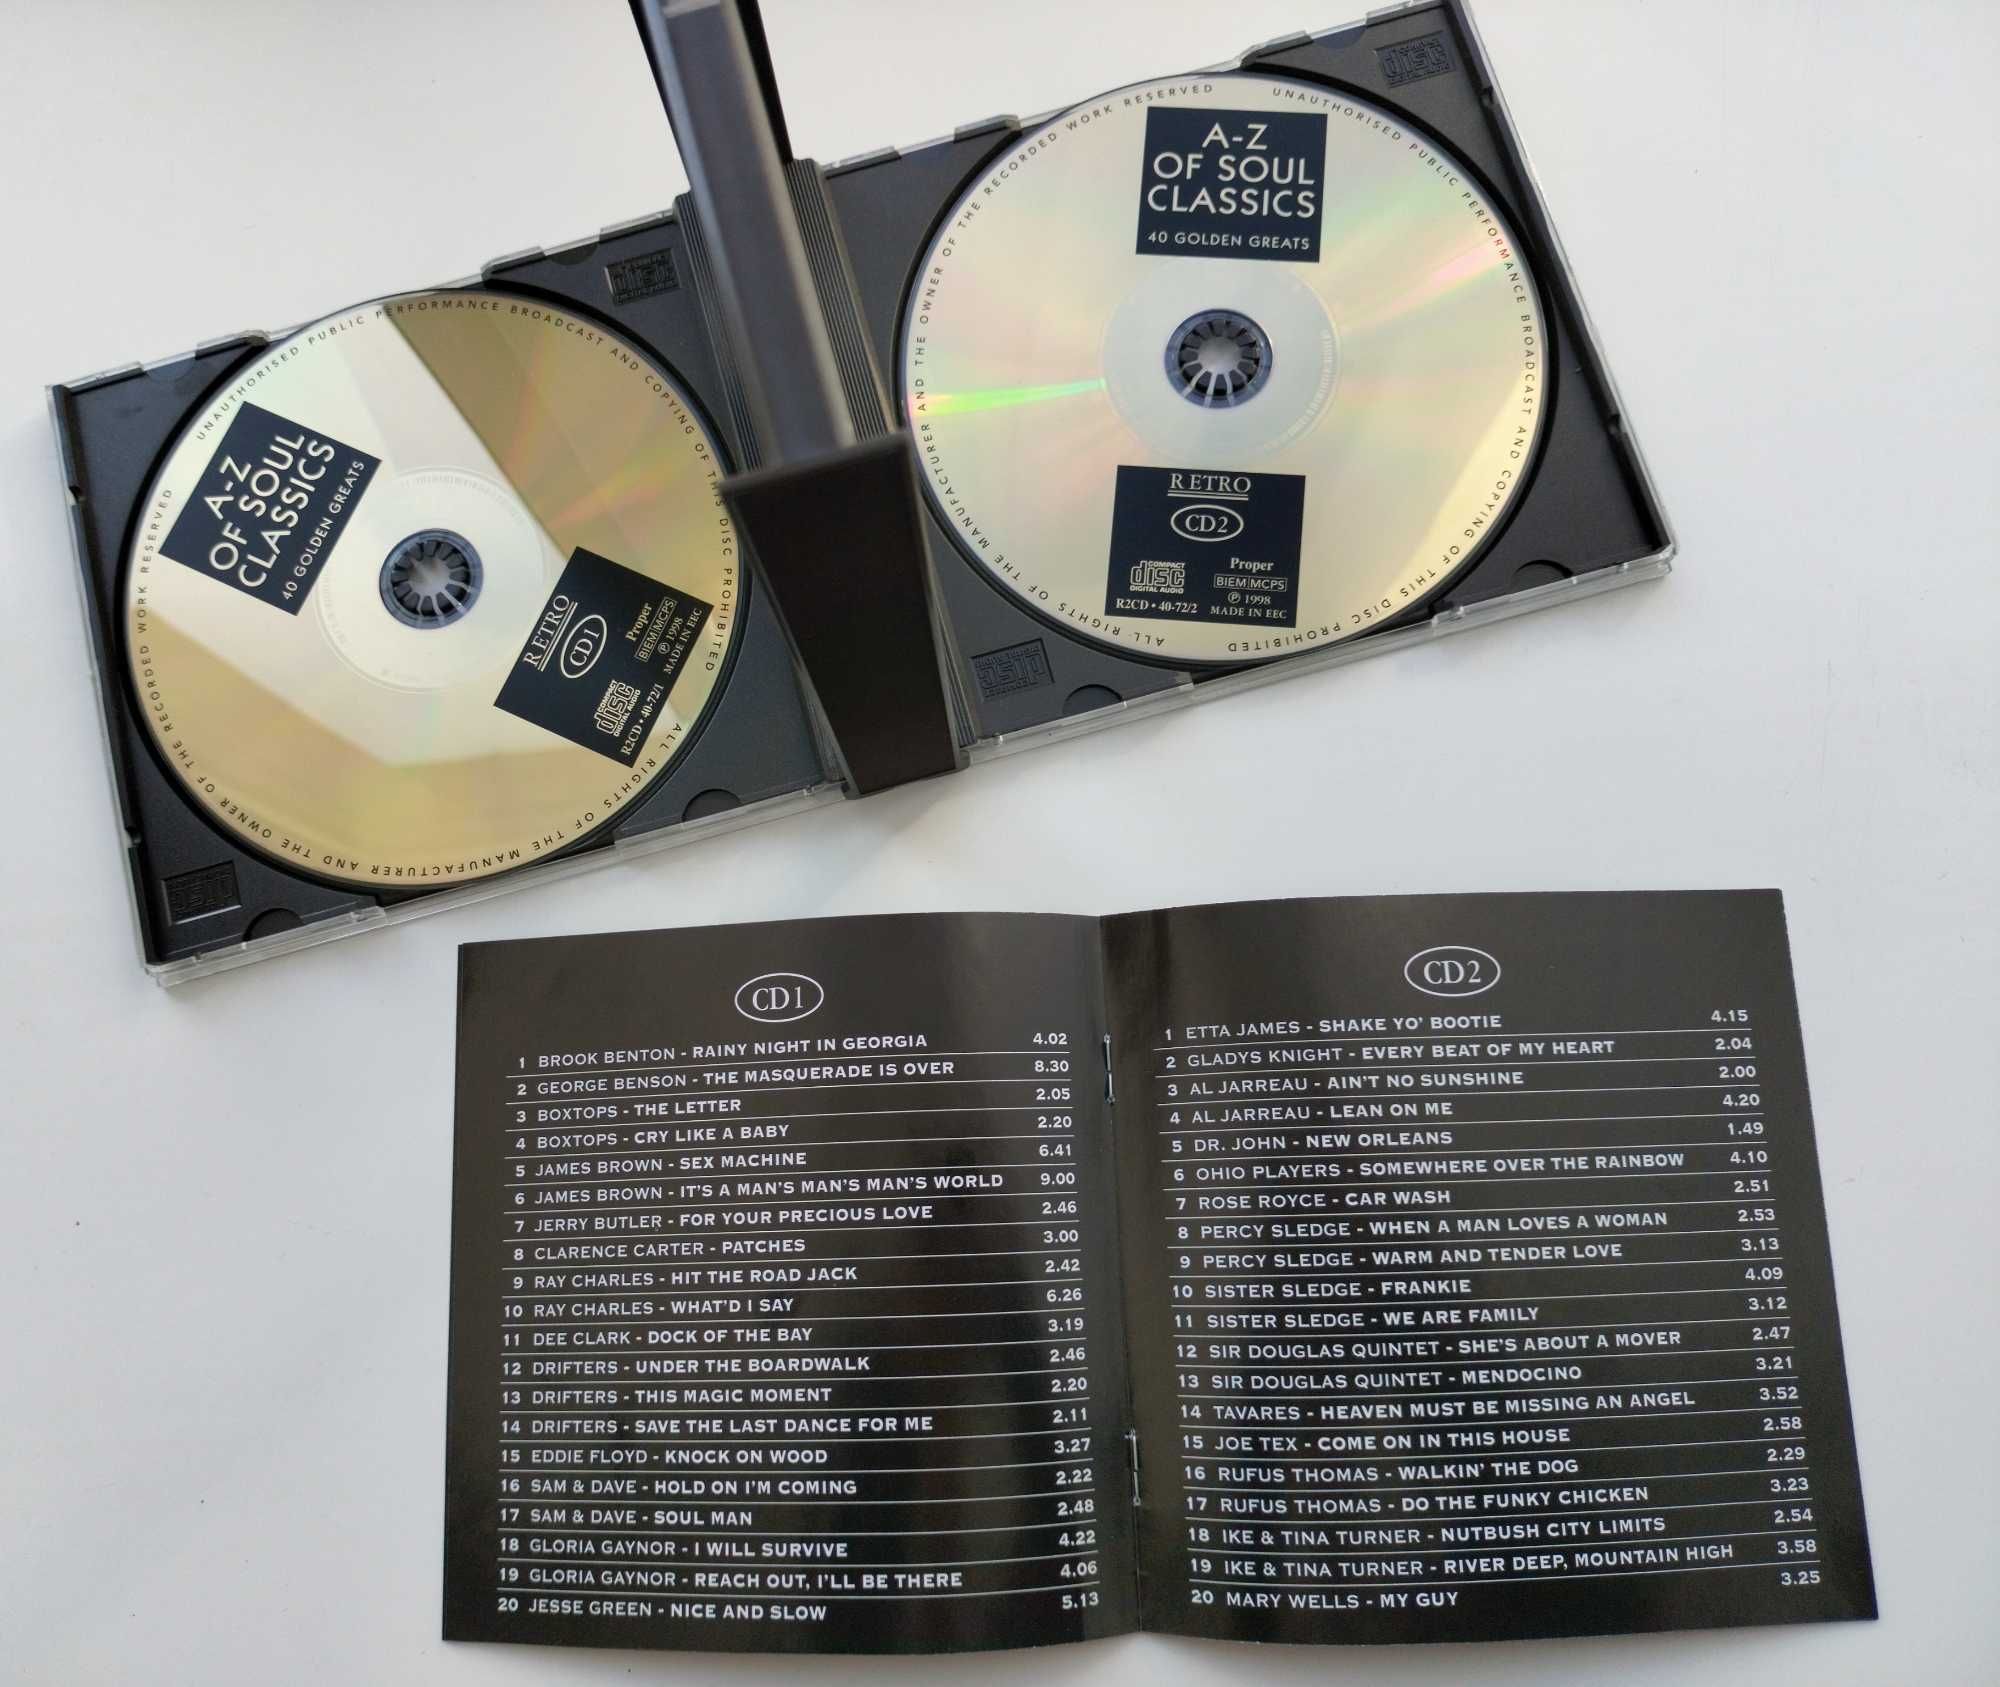 Компакт диск A-Z of soul classics 40 golden greats